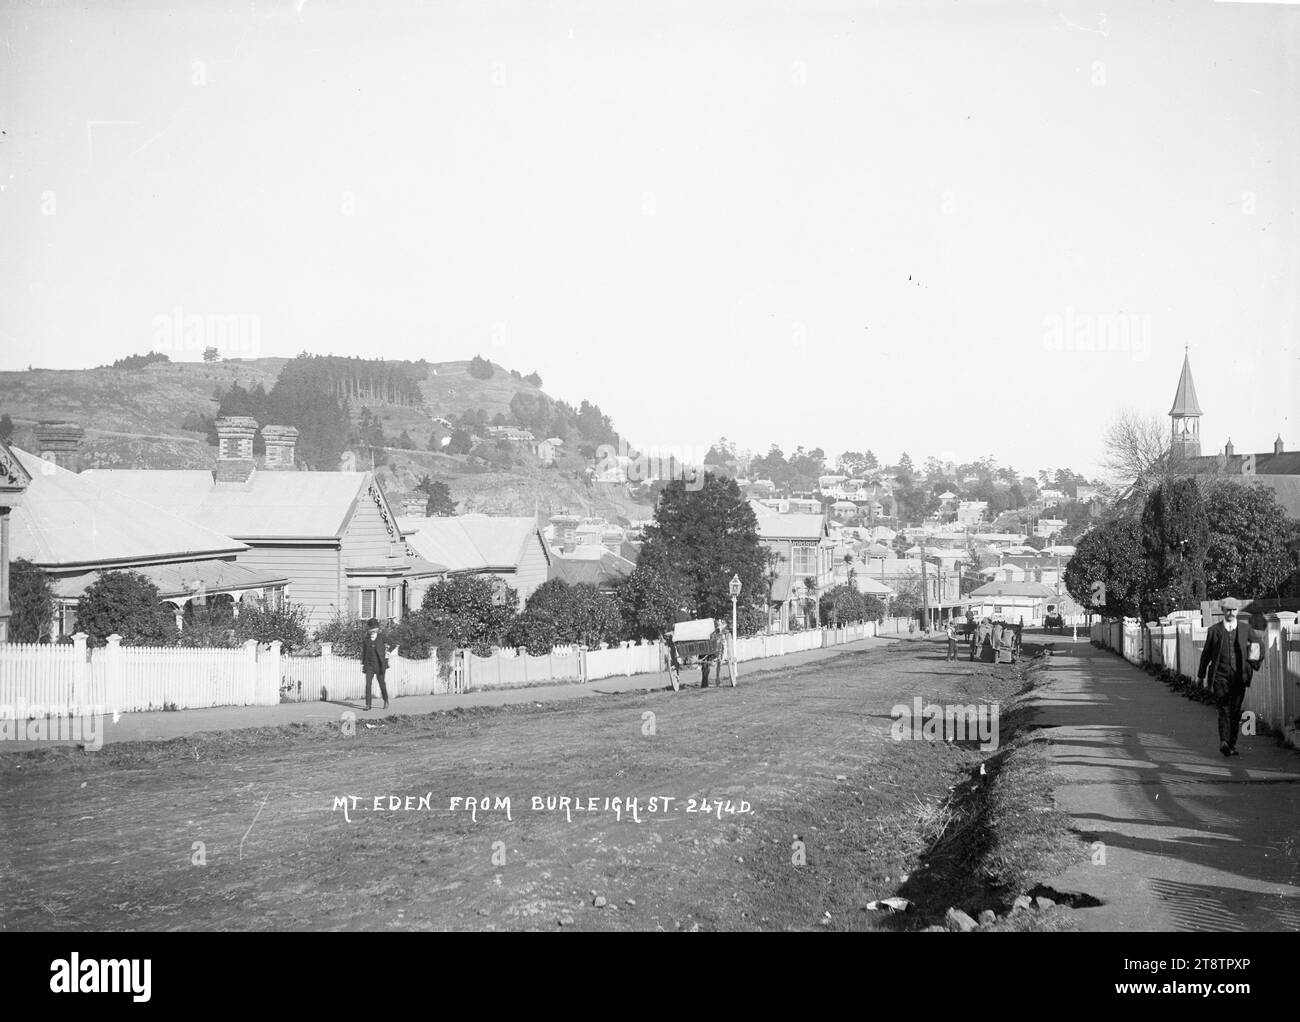 Burleigh Street, Mount Eden, Auckland, Nouvelle-Zélande, vue le long de Burleigh Street vers Mount Eden. Un lampadaire à gaz peut être vu sur le côté gauche de la route près d'un cheval et d'une charrette. De l'autre côté de la route se trouve l'église baptiste. Un cheval et une charrette sont sur la route à proximité livrant des sacs de charbon? Prise au début des années 1900 Banque D'Images